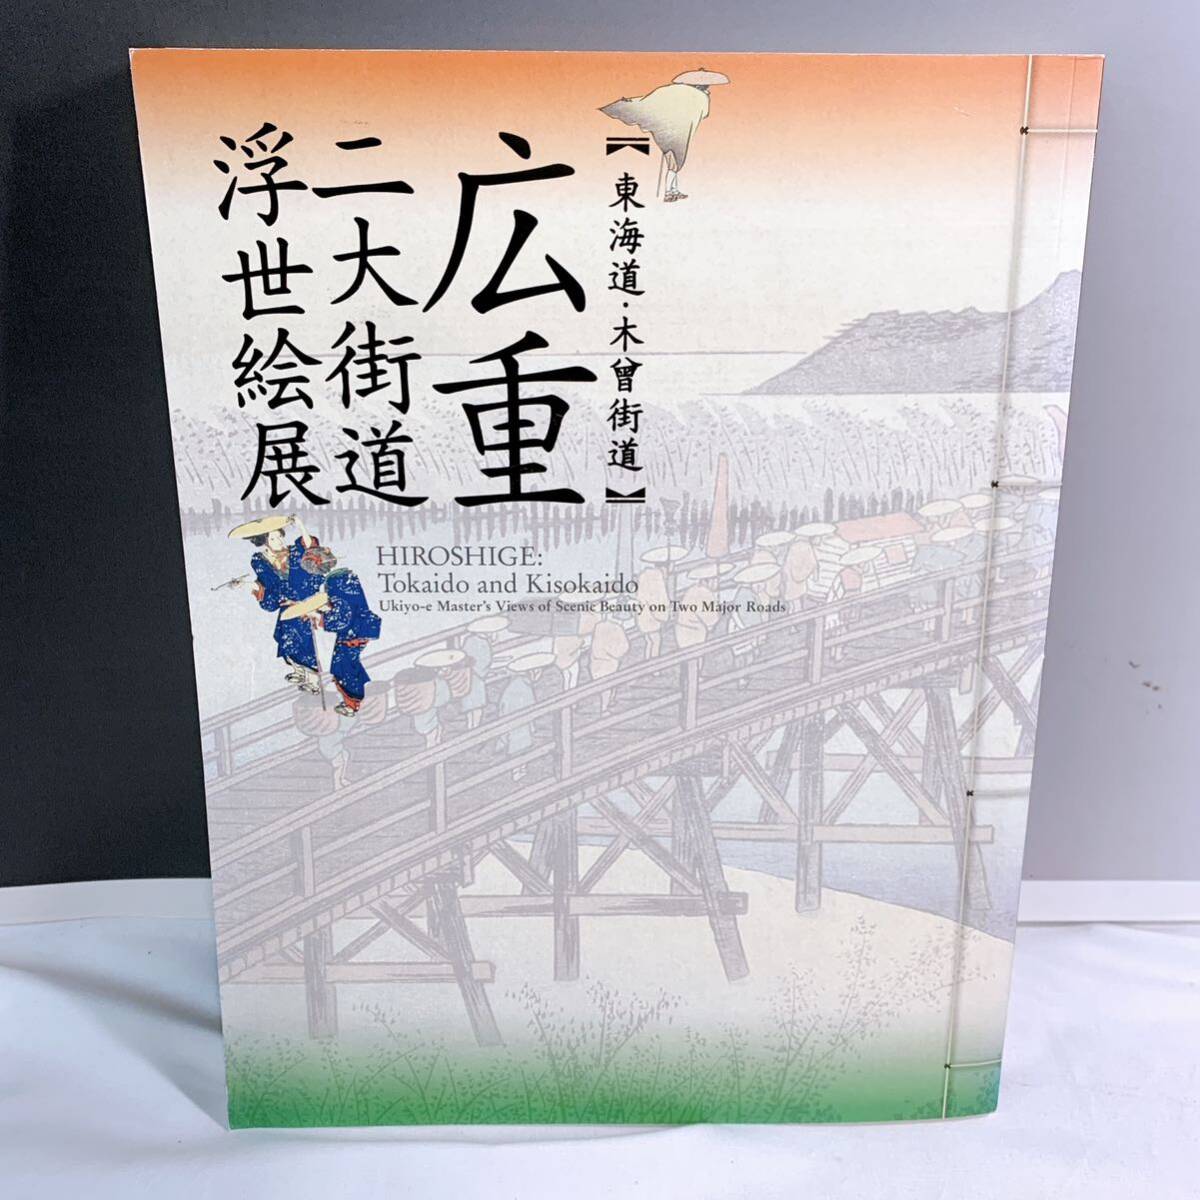 Q4-W4/9 हिरोशिगे उकियो-ई दो महान राजमार्गों की प्रदर्शनी: उतागावा हिरोशिगे द्वारा टोकाइडो और किसो राजमार्ग, चित्रकारी, कला पुस्तक, संग्रह, कला पुस्तक